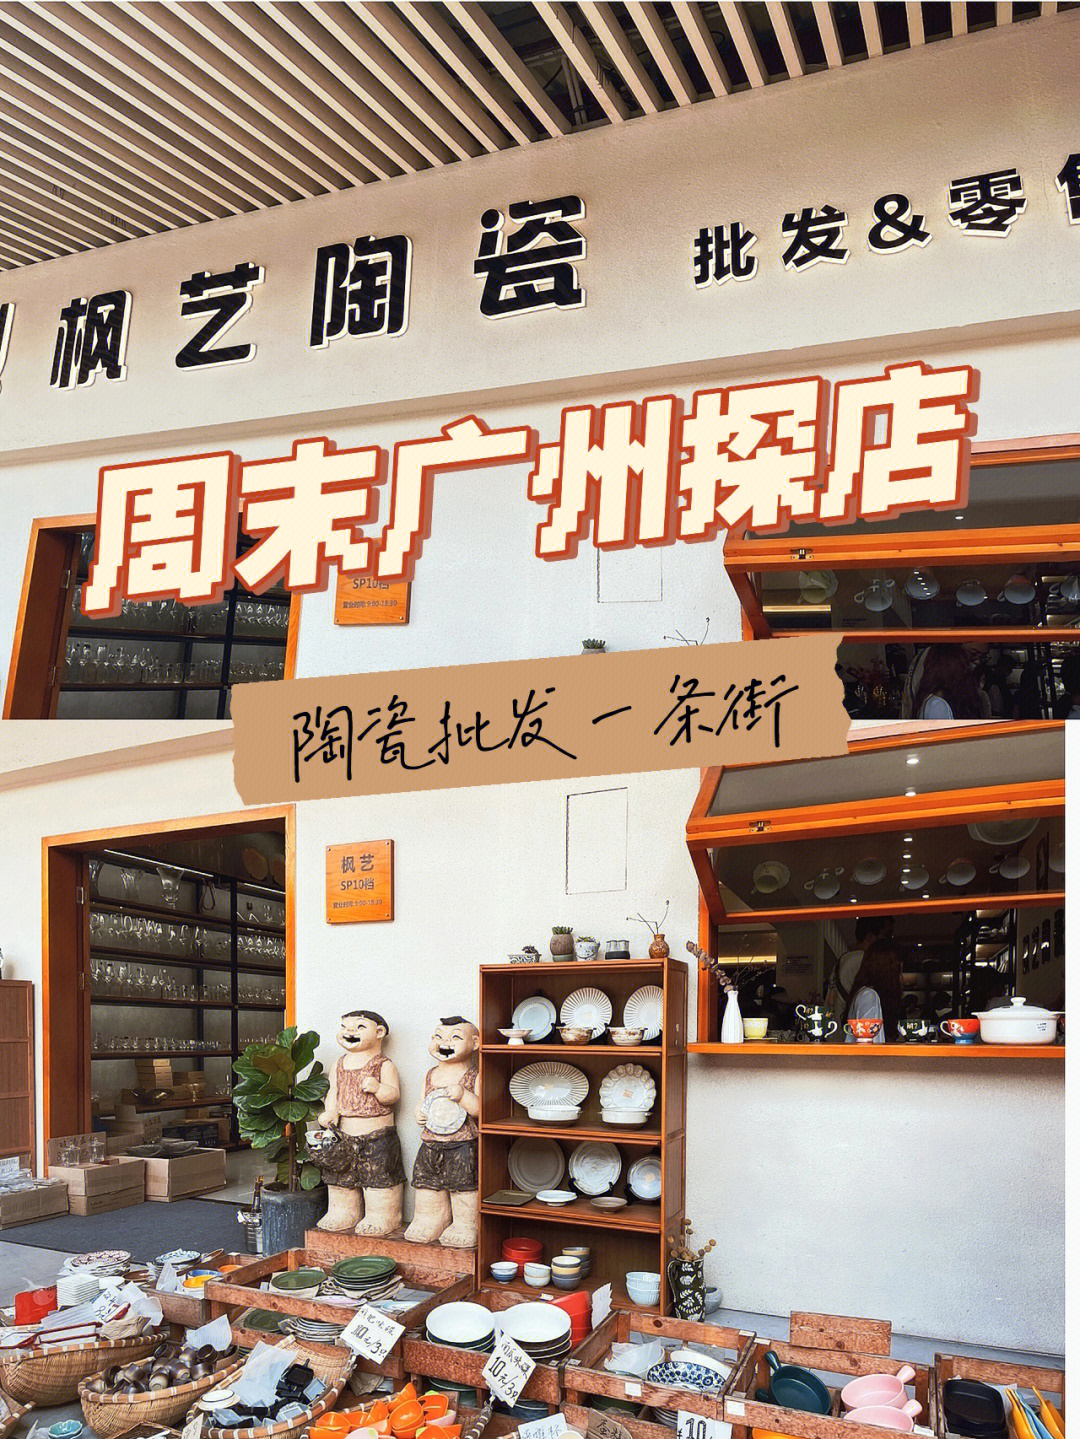 8月探店分享广州海珠区陶瓷批发宝藏店铺